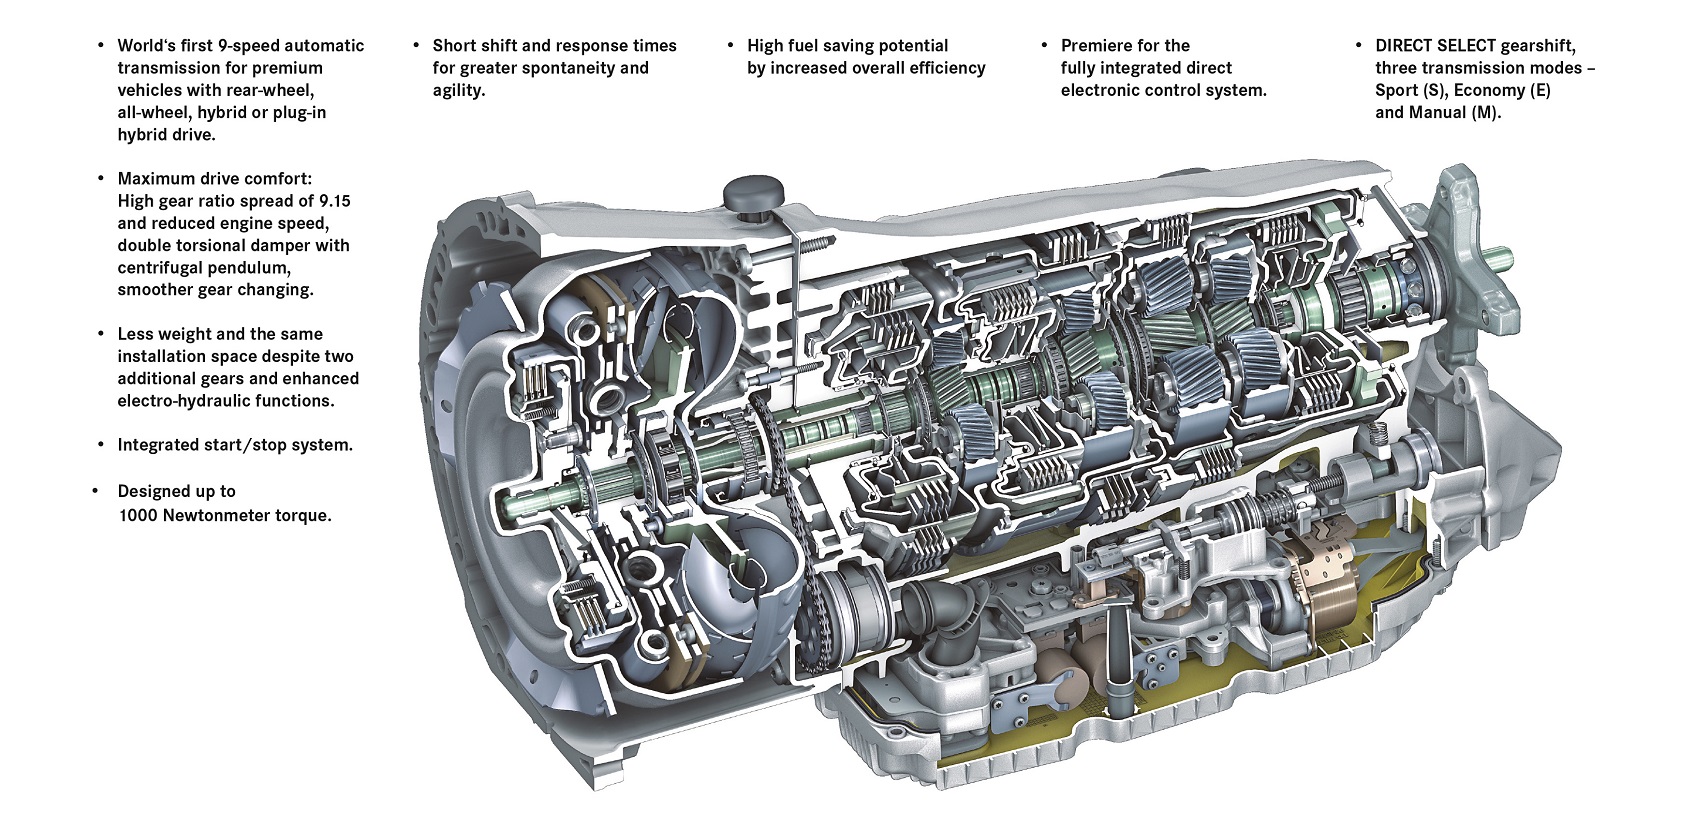 La transmission automatique Mercedes-Benz 9G-TRONIC